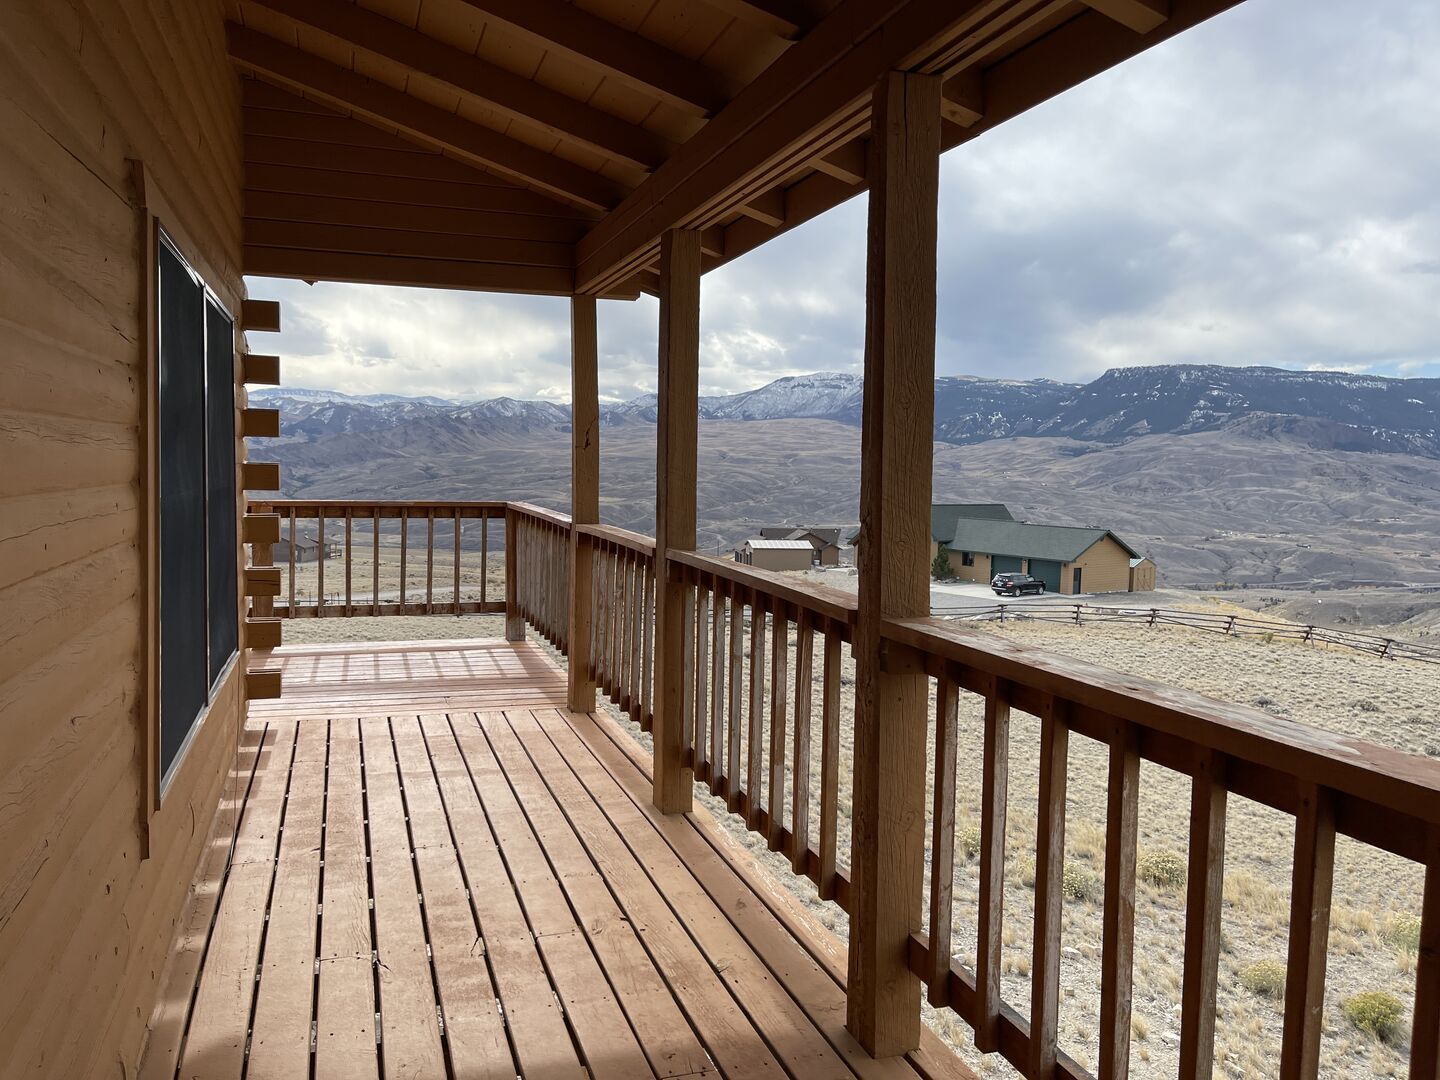 Wrap around porch with panoramic views